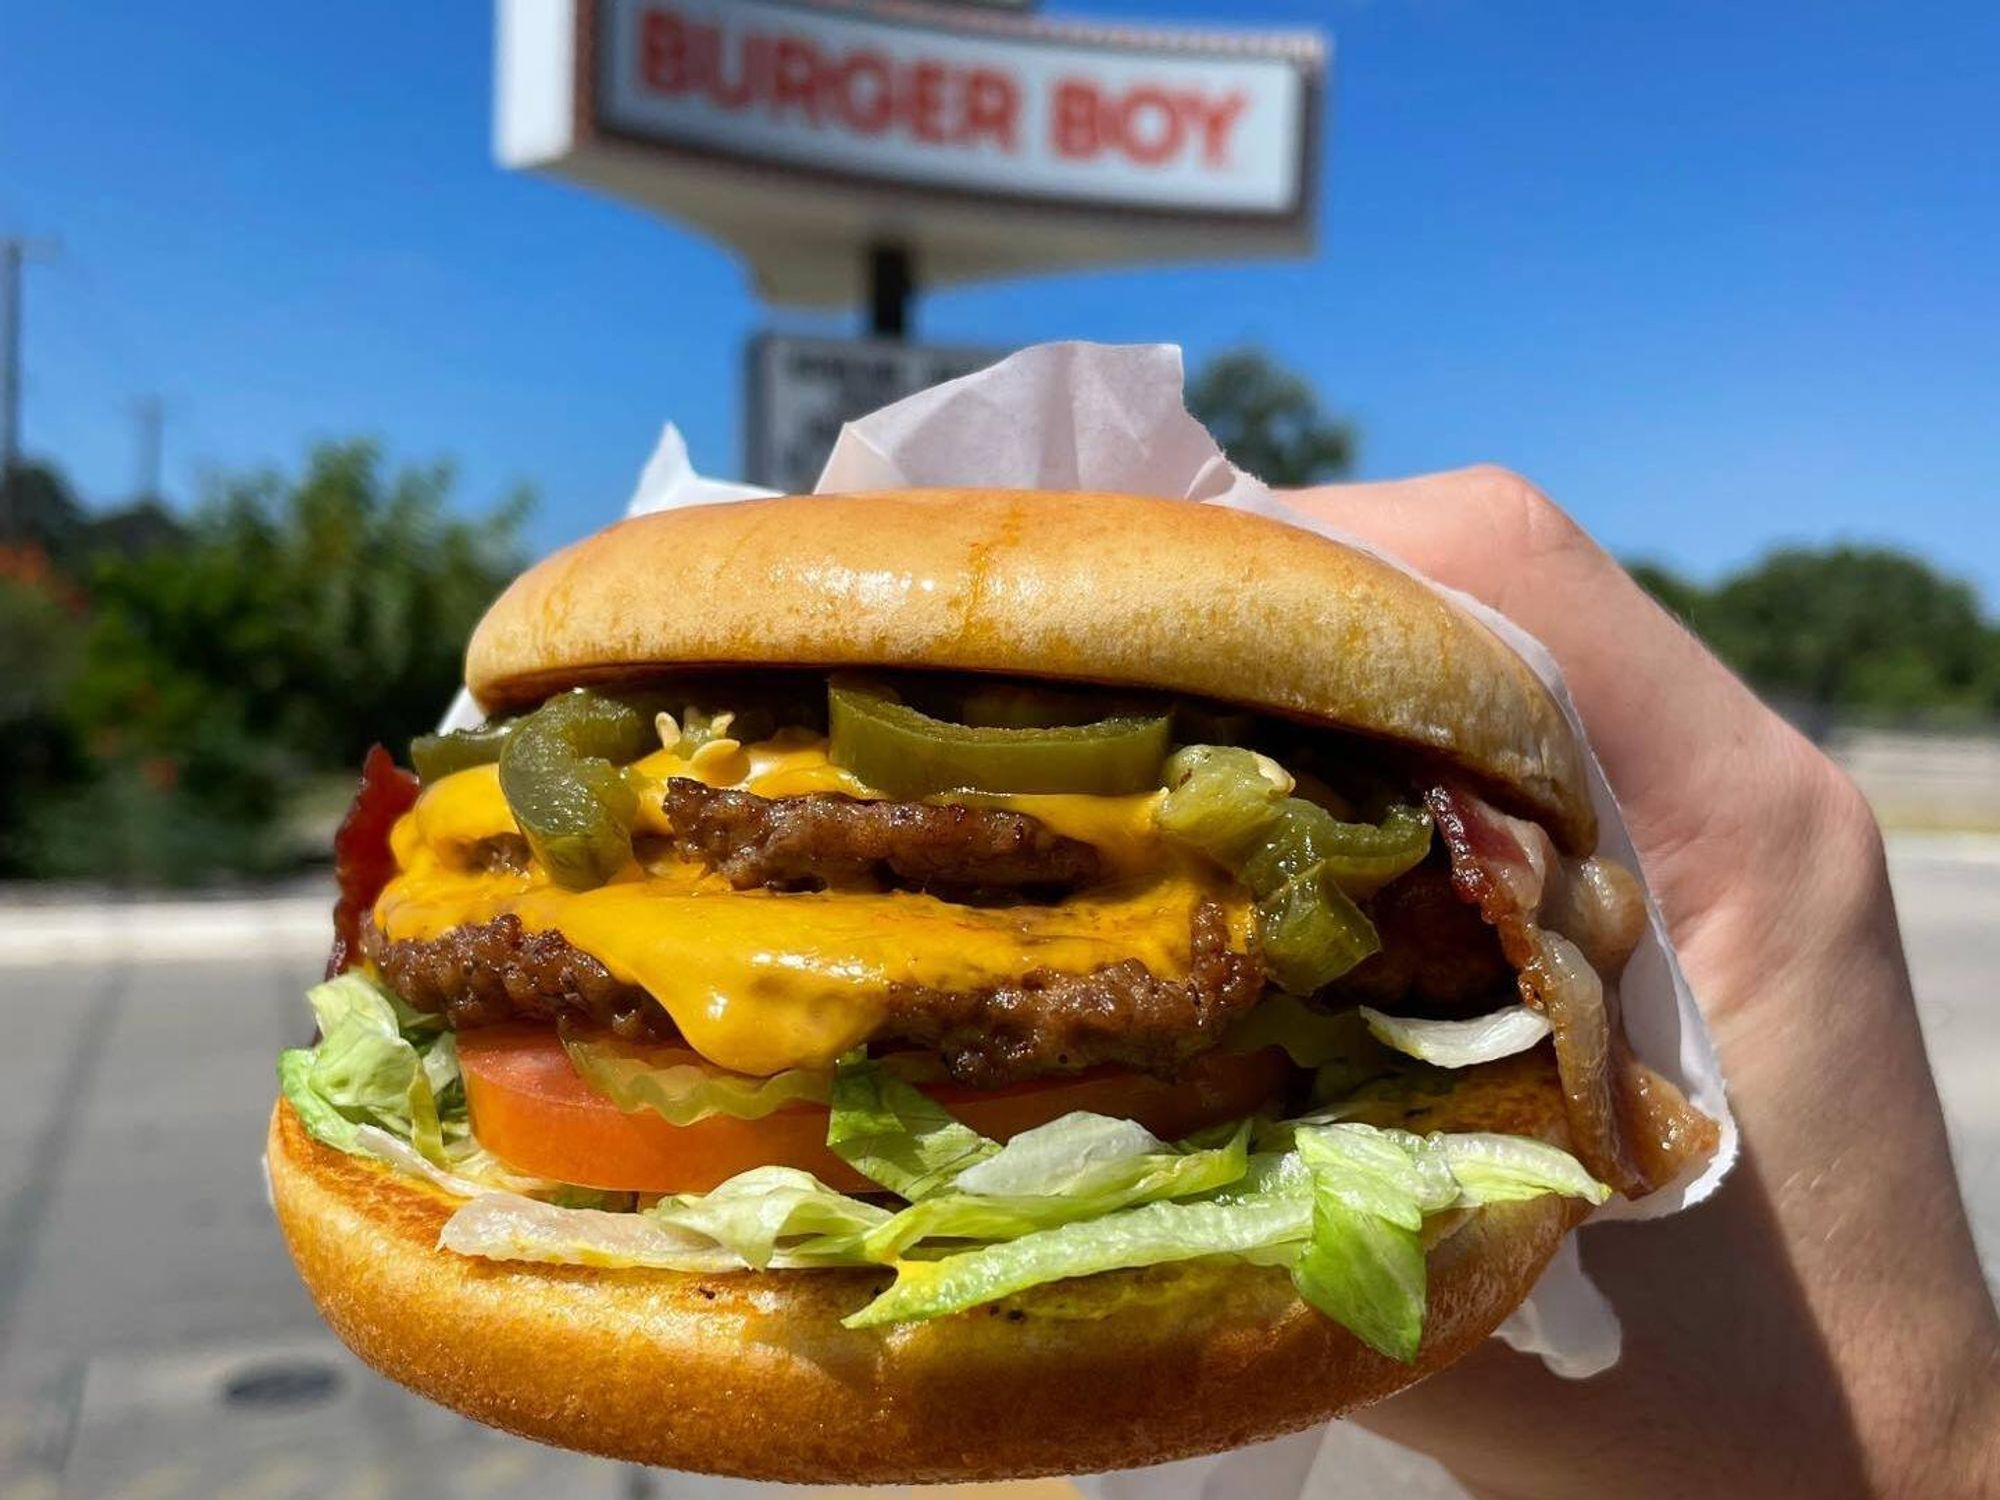 Burger Boy San Antonio